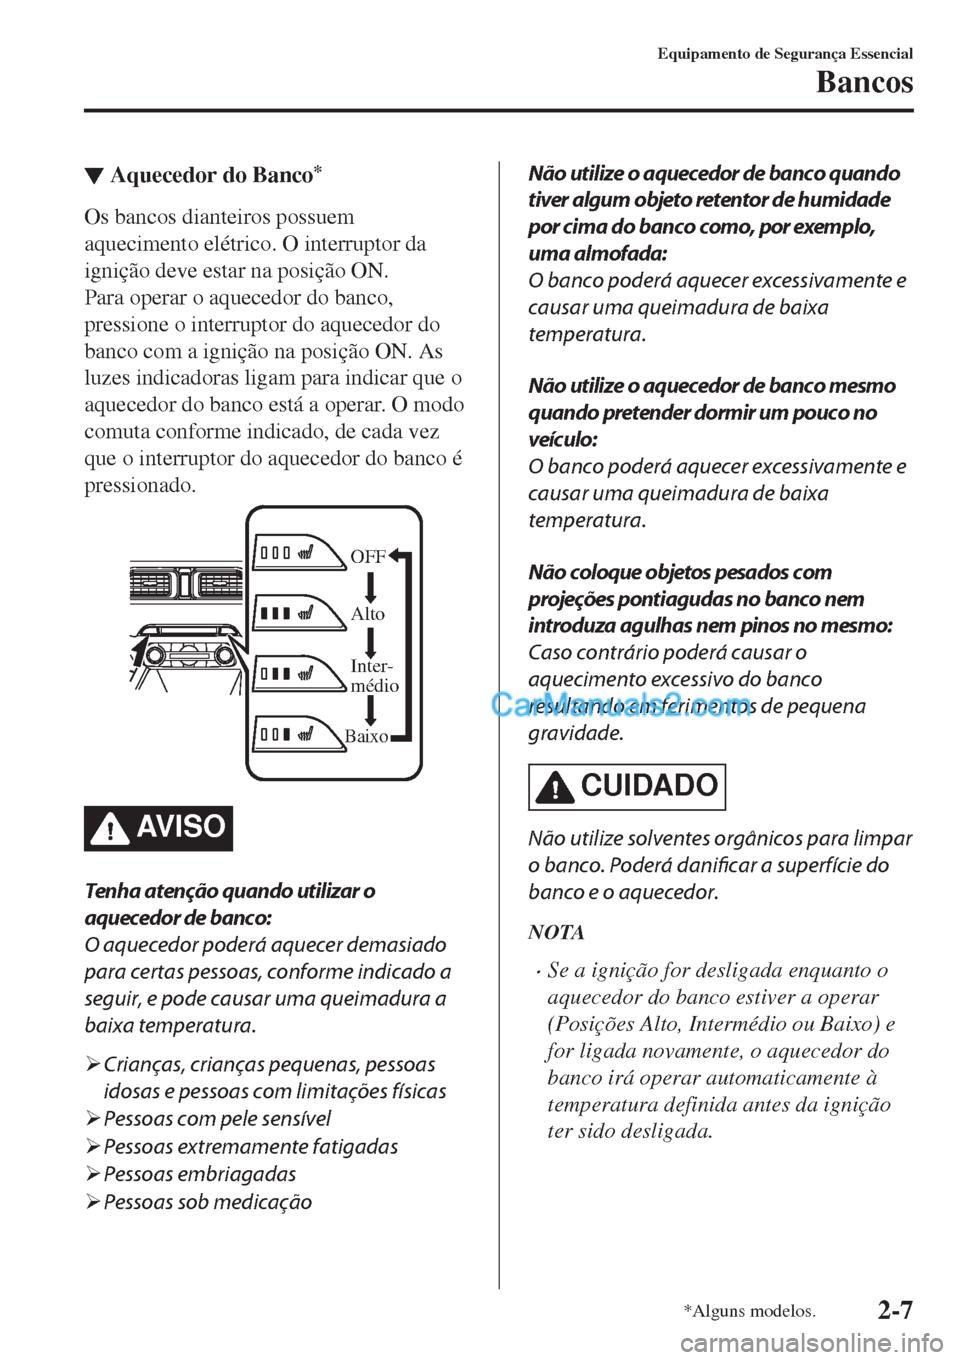 MAZDA MODEL CX-5 2017  Manual do proprietário (in Portuguese) ▼Aquecedor do Banco*
Os bancos dianteiros possuem
aquecimento elétrico. O interruptor da
ignição deve estar na posição ON.
Para operar o aquecedor do banco,
pressione o interruptor do aquecedor